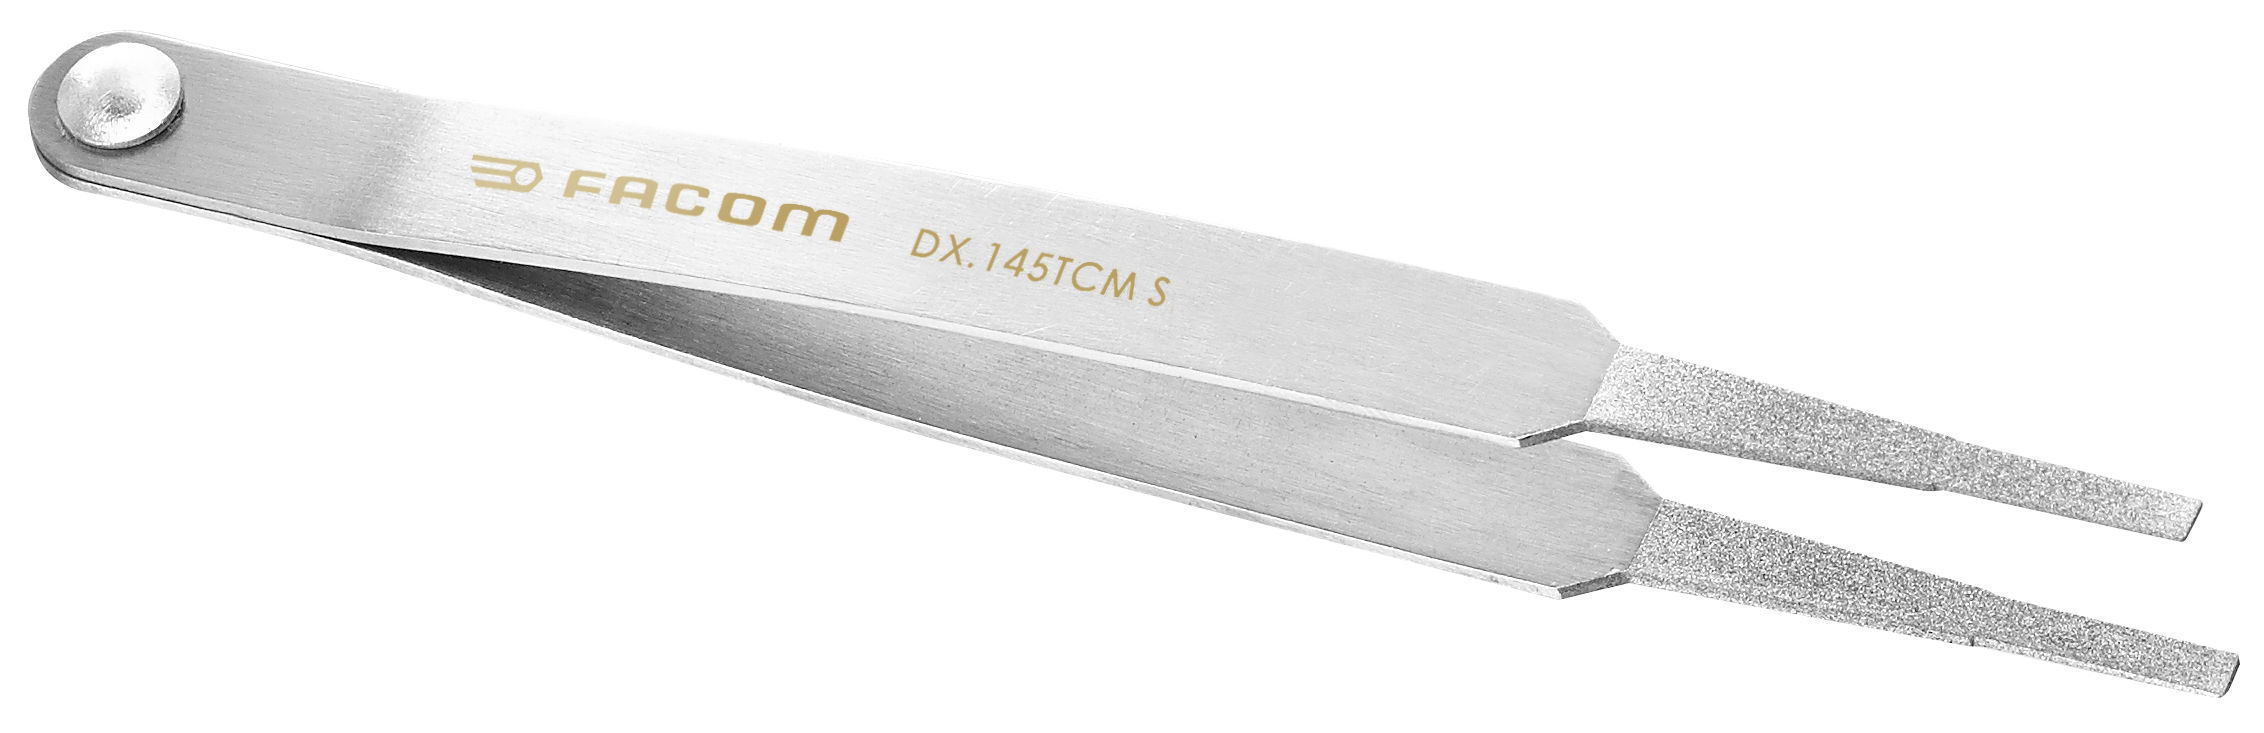 1.DX.145TCM Diamantpincet voor het reinigen van contacten medium